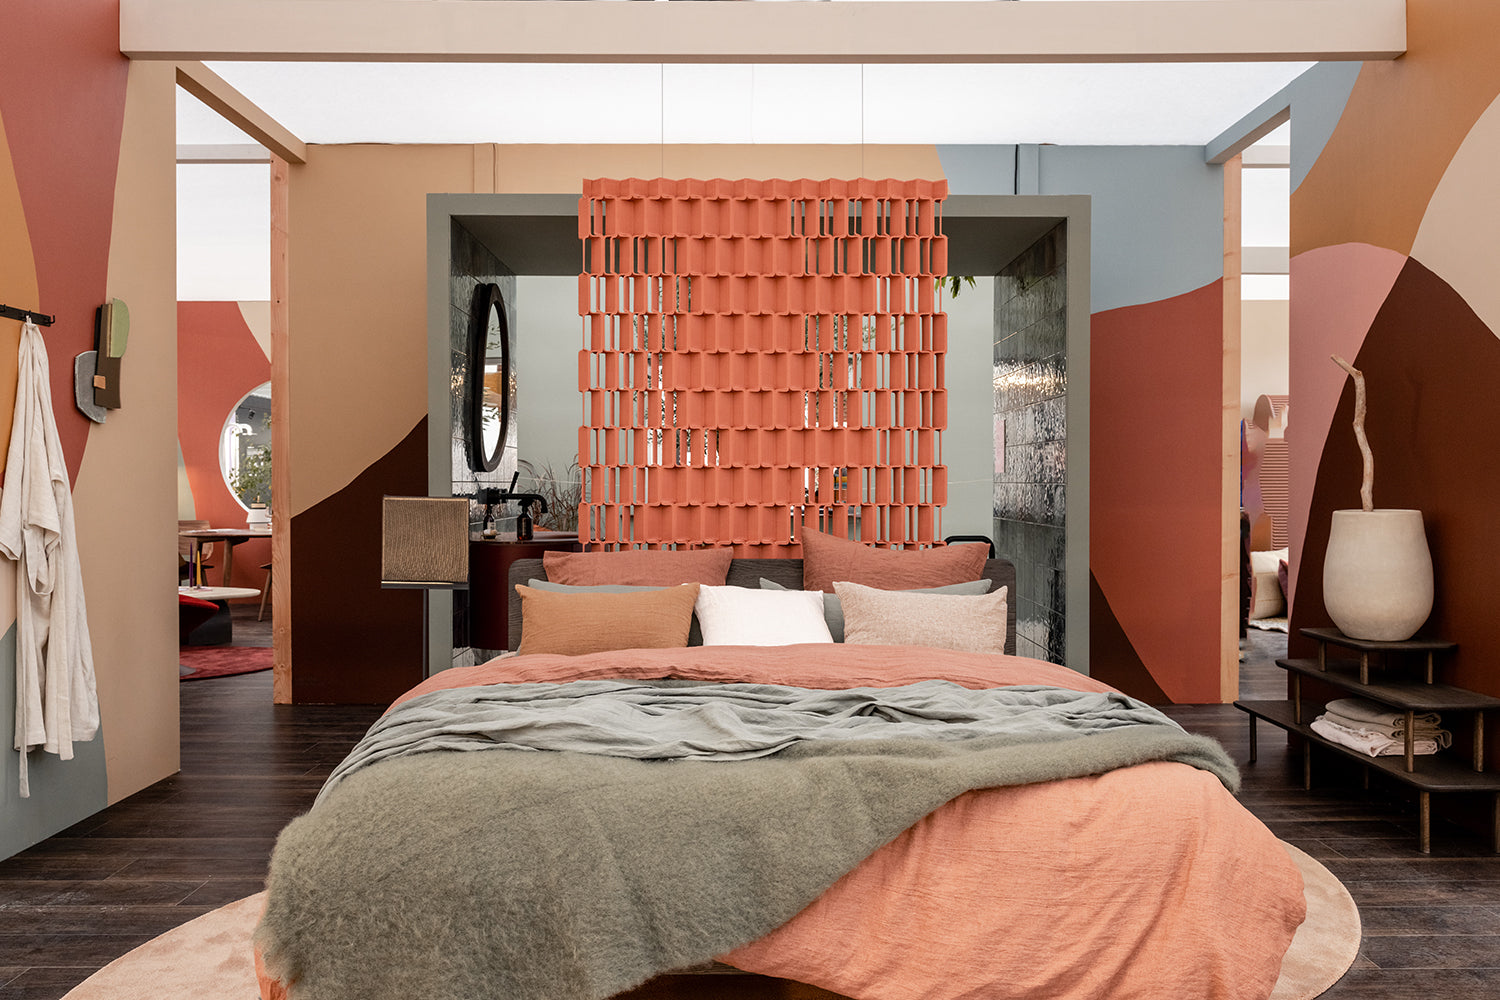 Slaapkamer in het Eigen Huis & Interieur Paviljoen op de vt wonen&design beurs